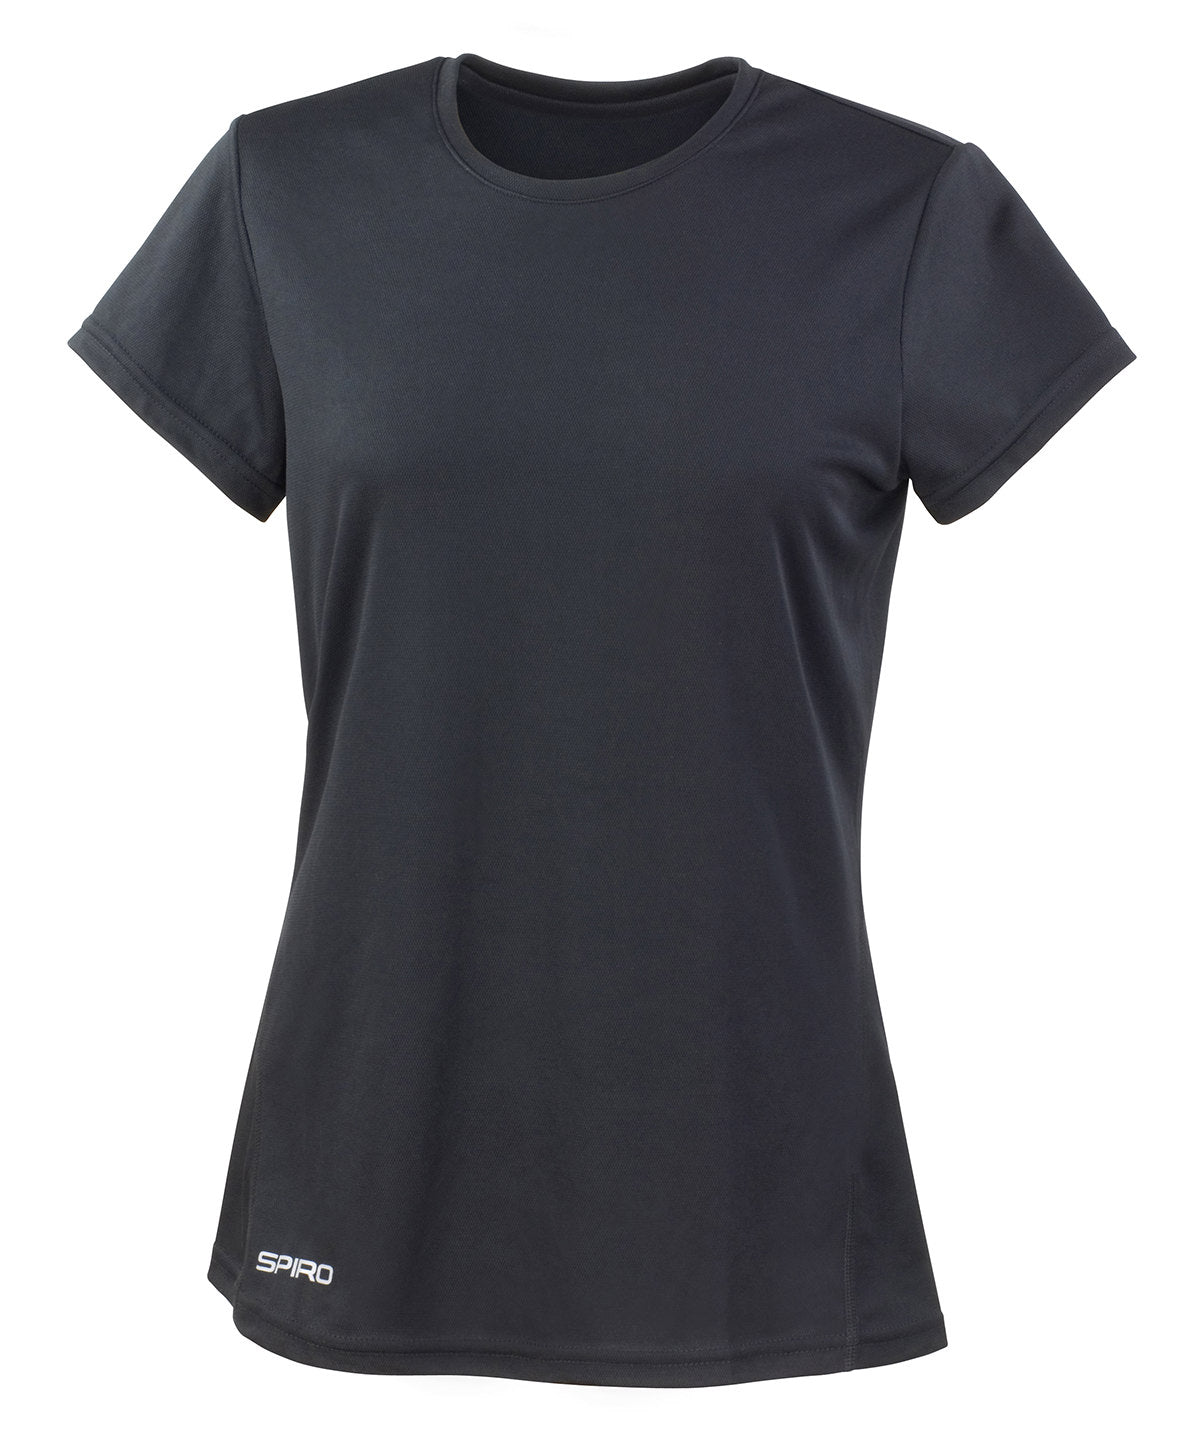 Spiro Womens Spiro Quick-Dry Short Sleeve T-Shirt